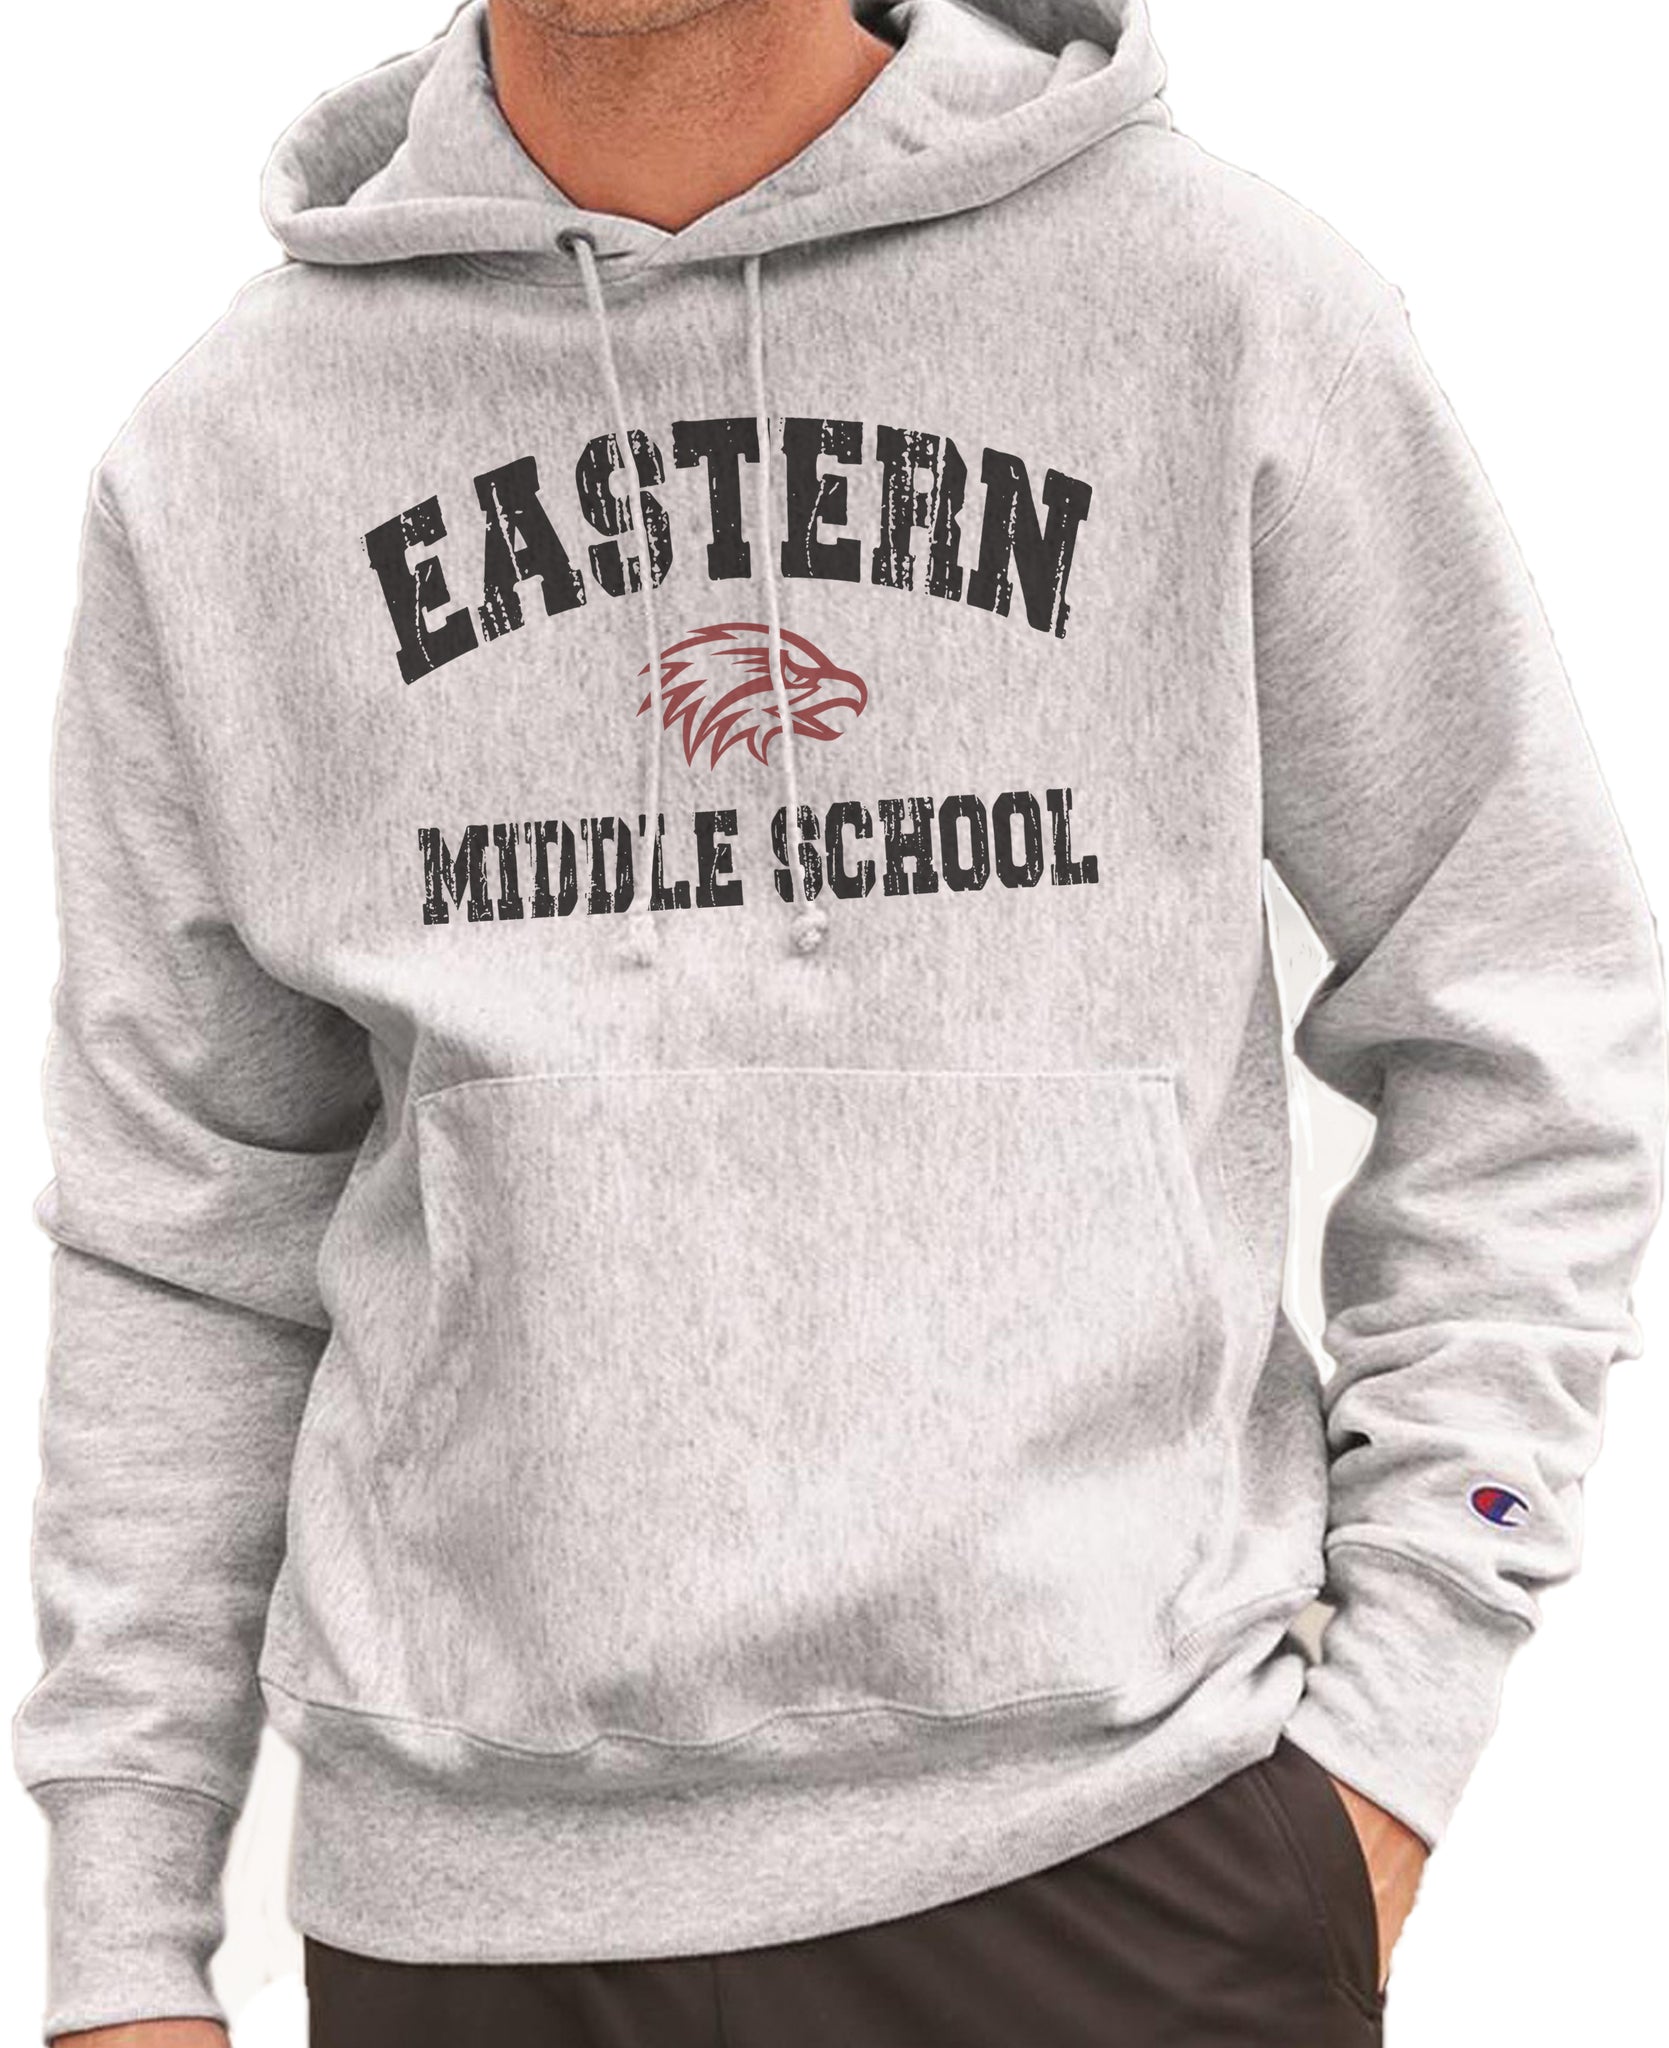 EMS EASTERN MIDDLE SCHOOL DISTRESSED  Reverse Weave Champion Hoodie Sweatshirt